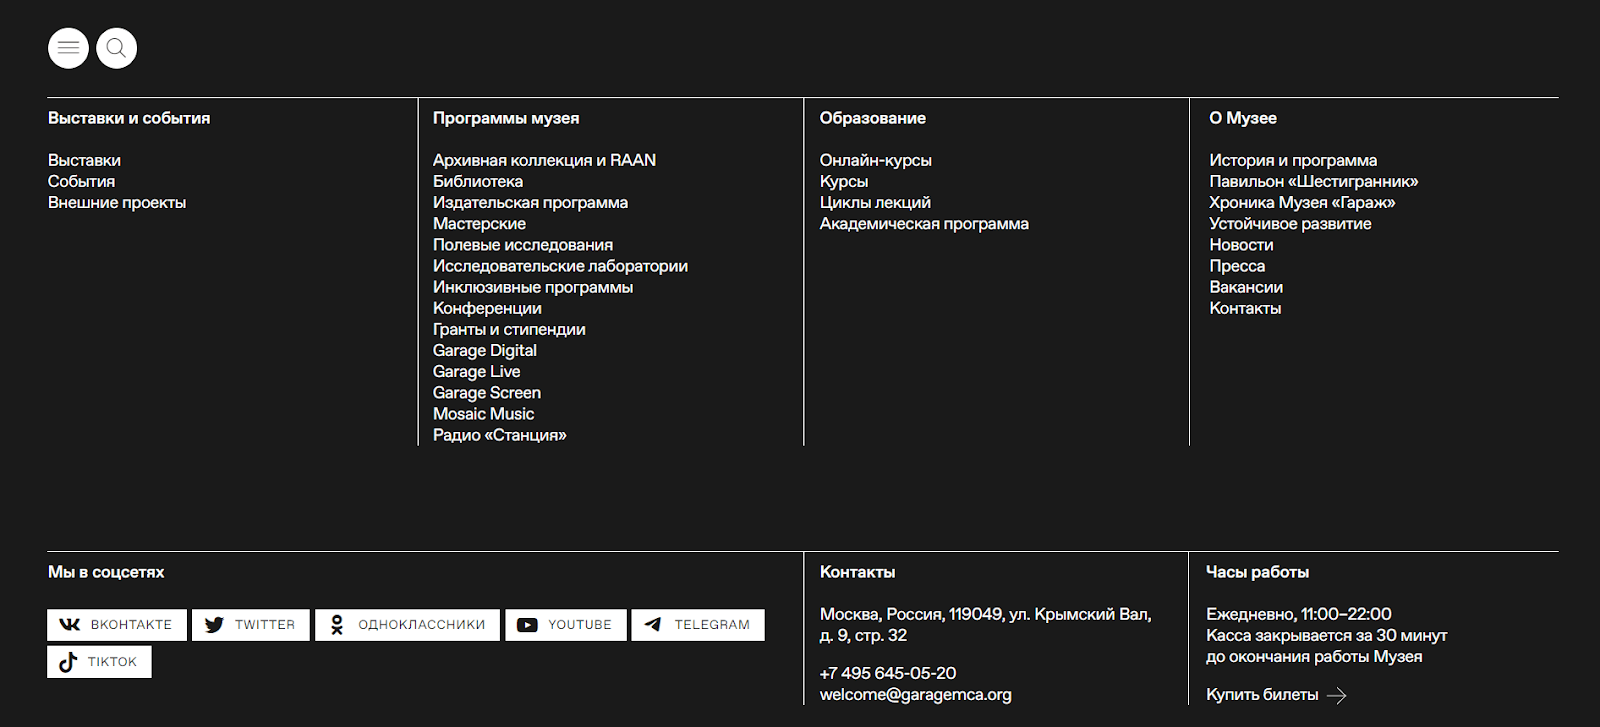 черный подвал сайта со списком разделов и контактов оформленным белым шрифтом